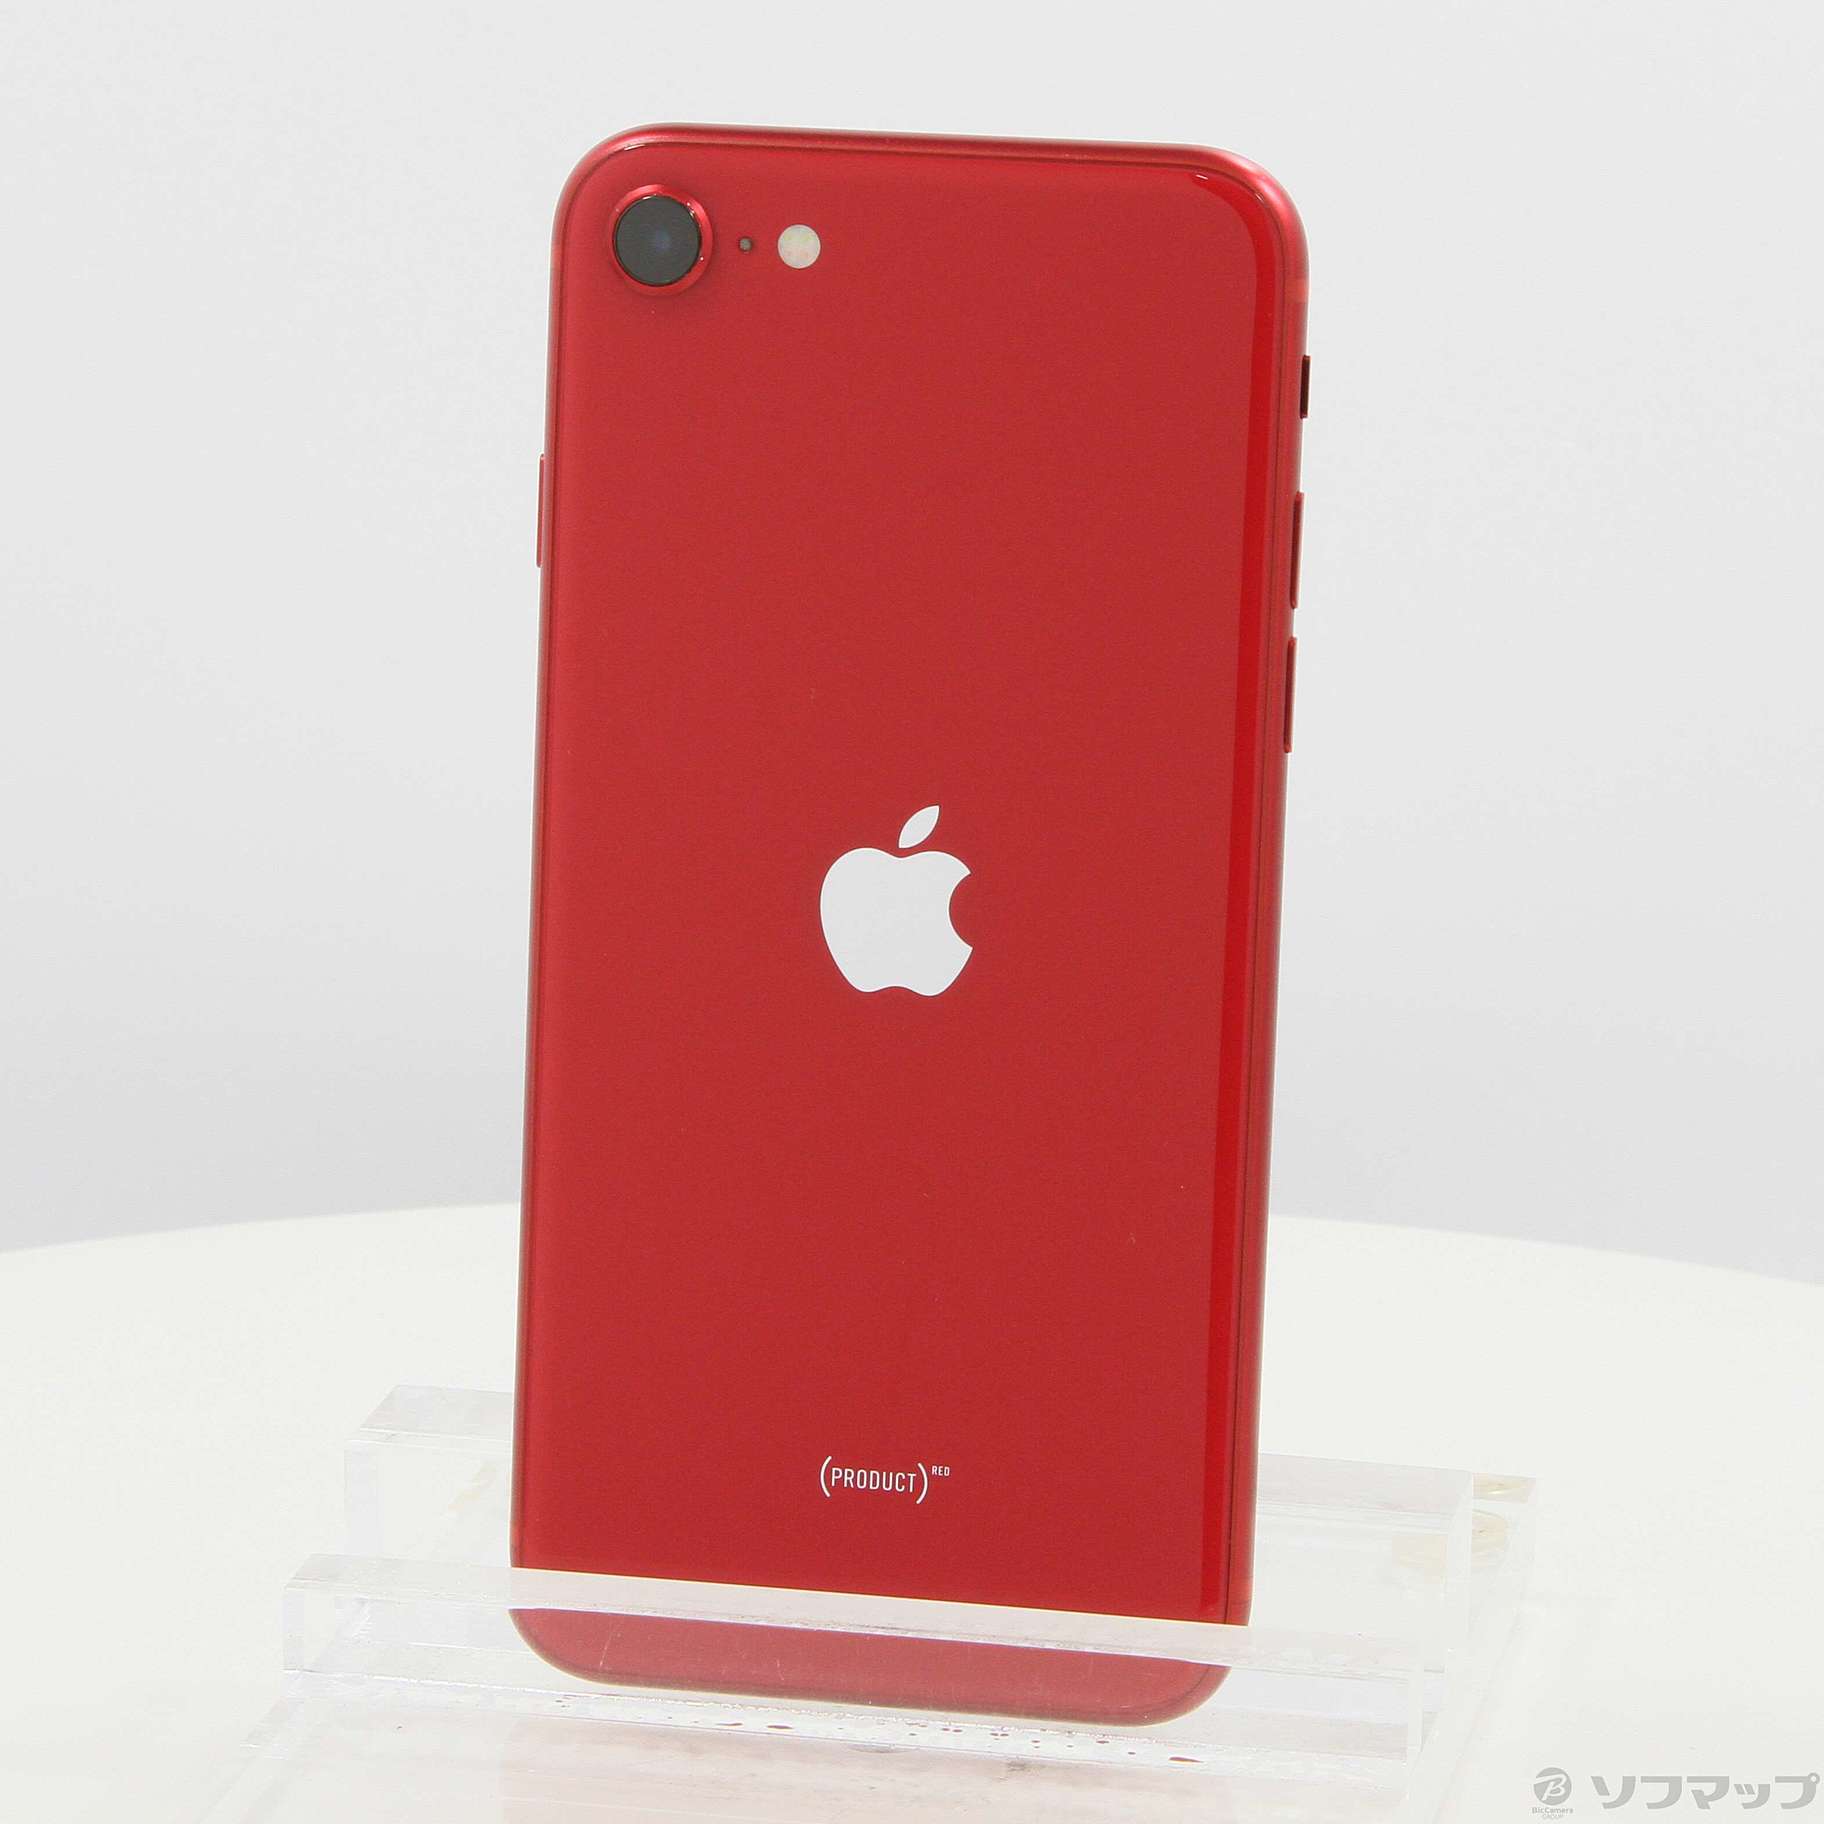 【ランクS】iPhone SE (第3世代) レッド 256 GB SIMフリー機種名iPhoneSE